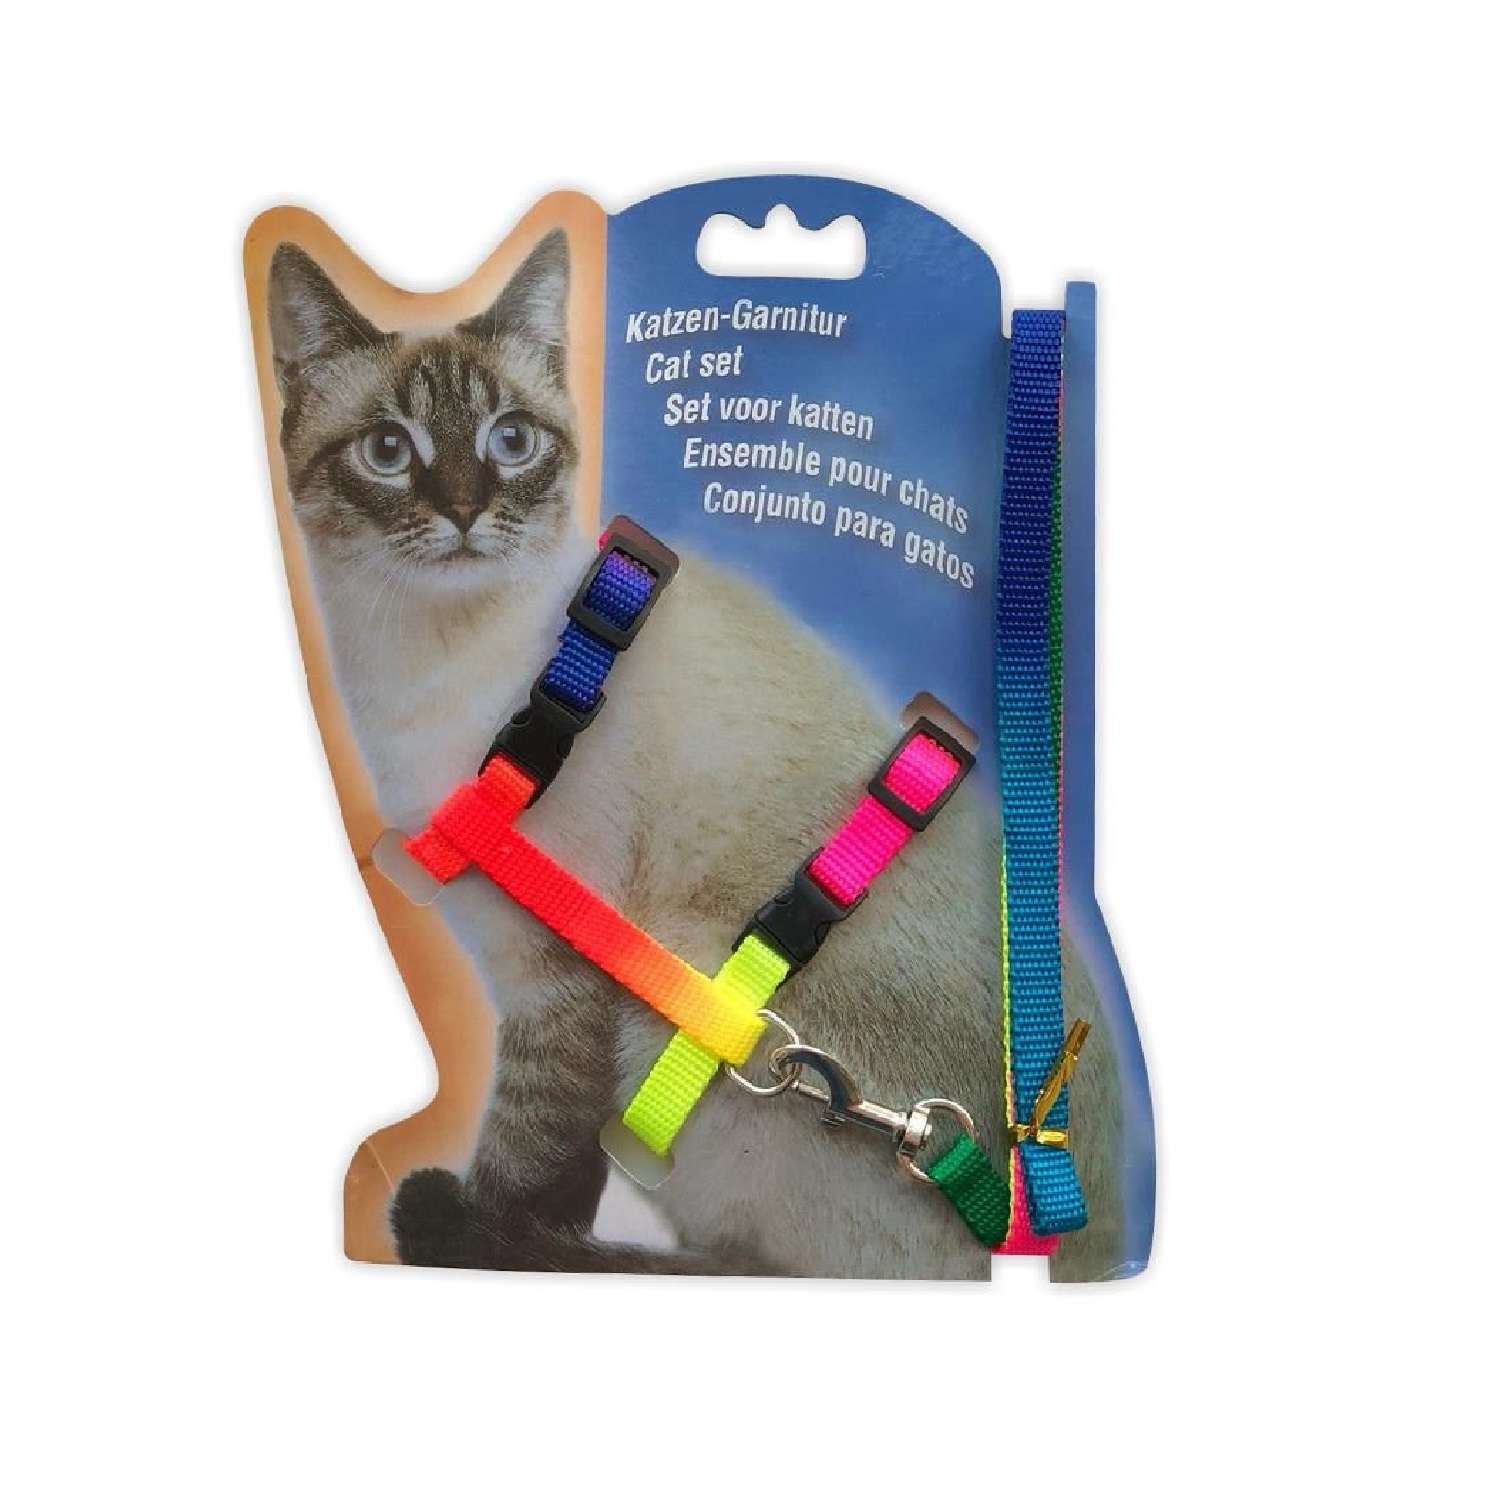 Делаем шлейку для кошки своими руками в домашних условиях: выкройка и шитьё